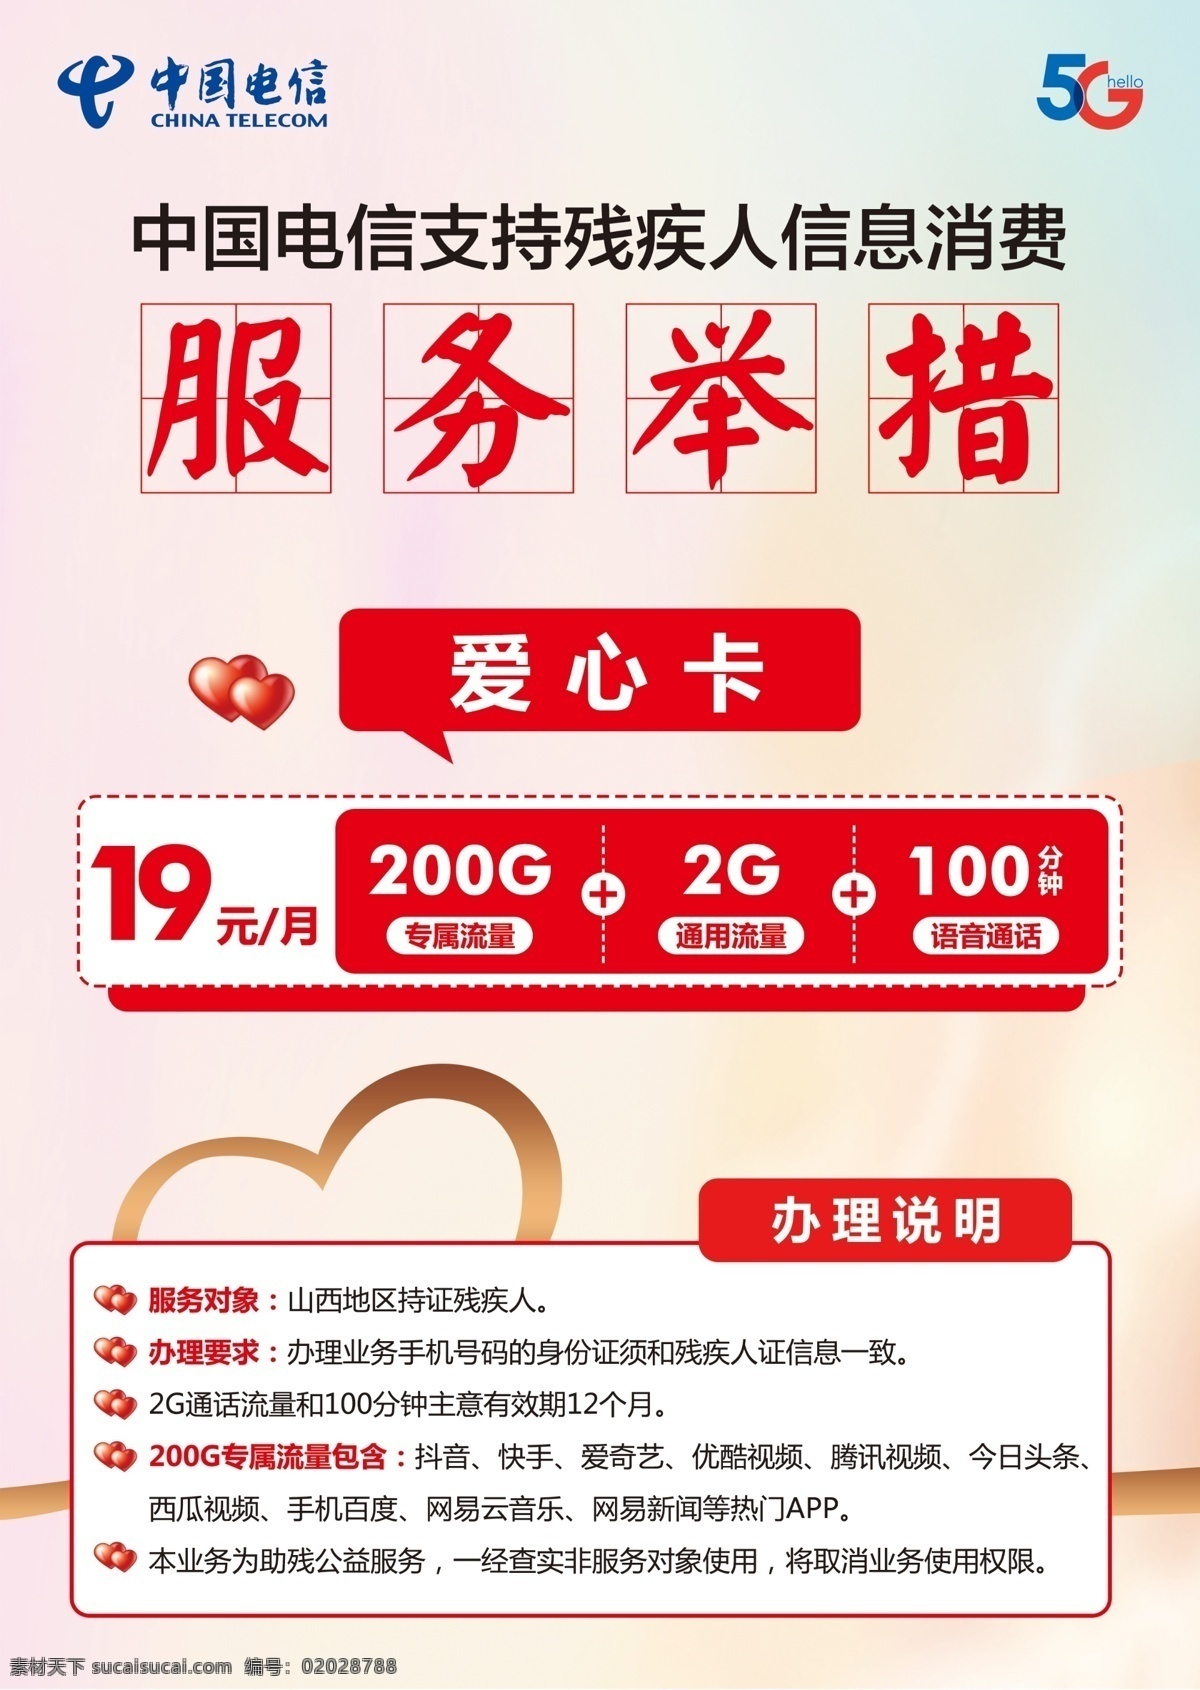 爱心卡图片 中国电信 爱心卡 残疾人消费 19元套餐 5g